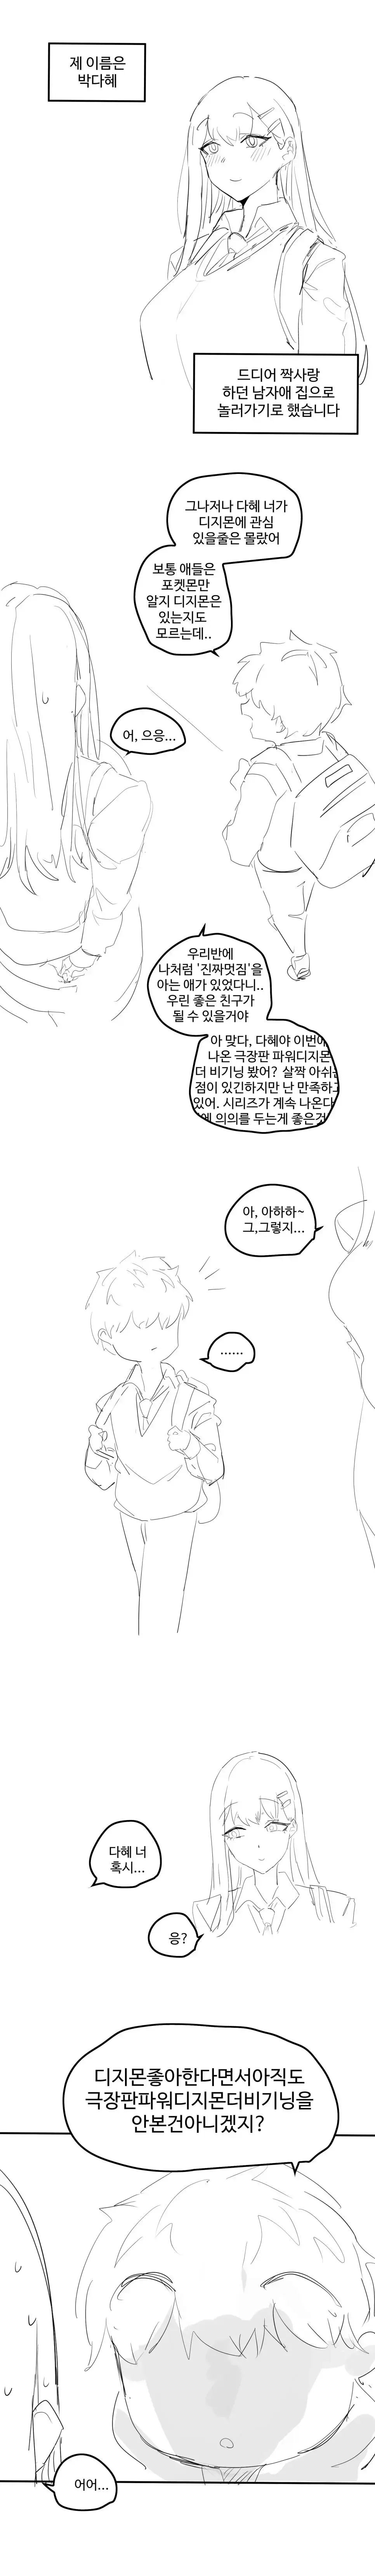 ㅆㄷ) ㅇㅎ) 짝사랑하는 남자애 집에 놀러가게된 만화.manhwa | mbong.kr 엠봉